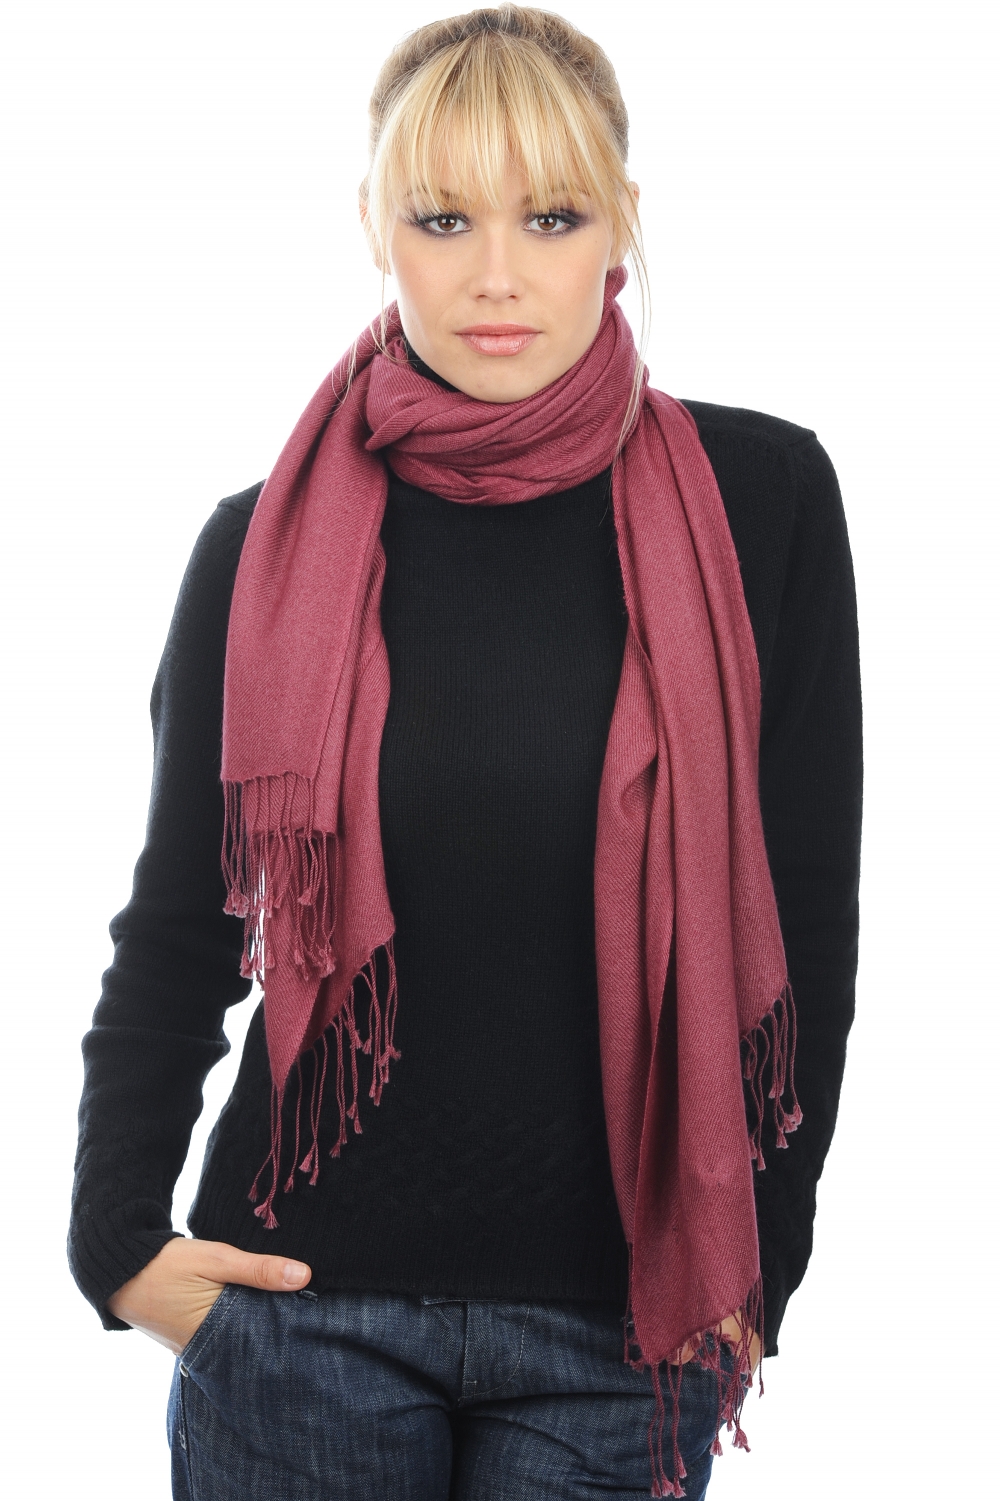 Cashmere accessories shawls diamant rose wine 201 cm x 71 cm